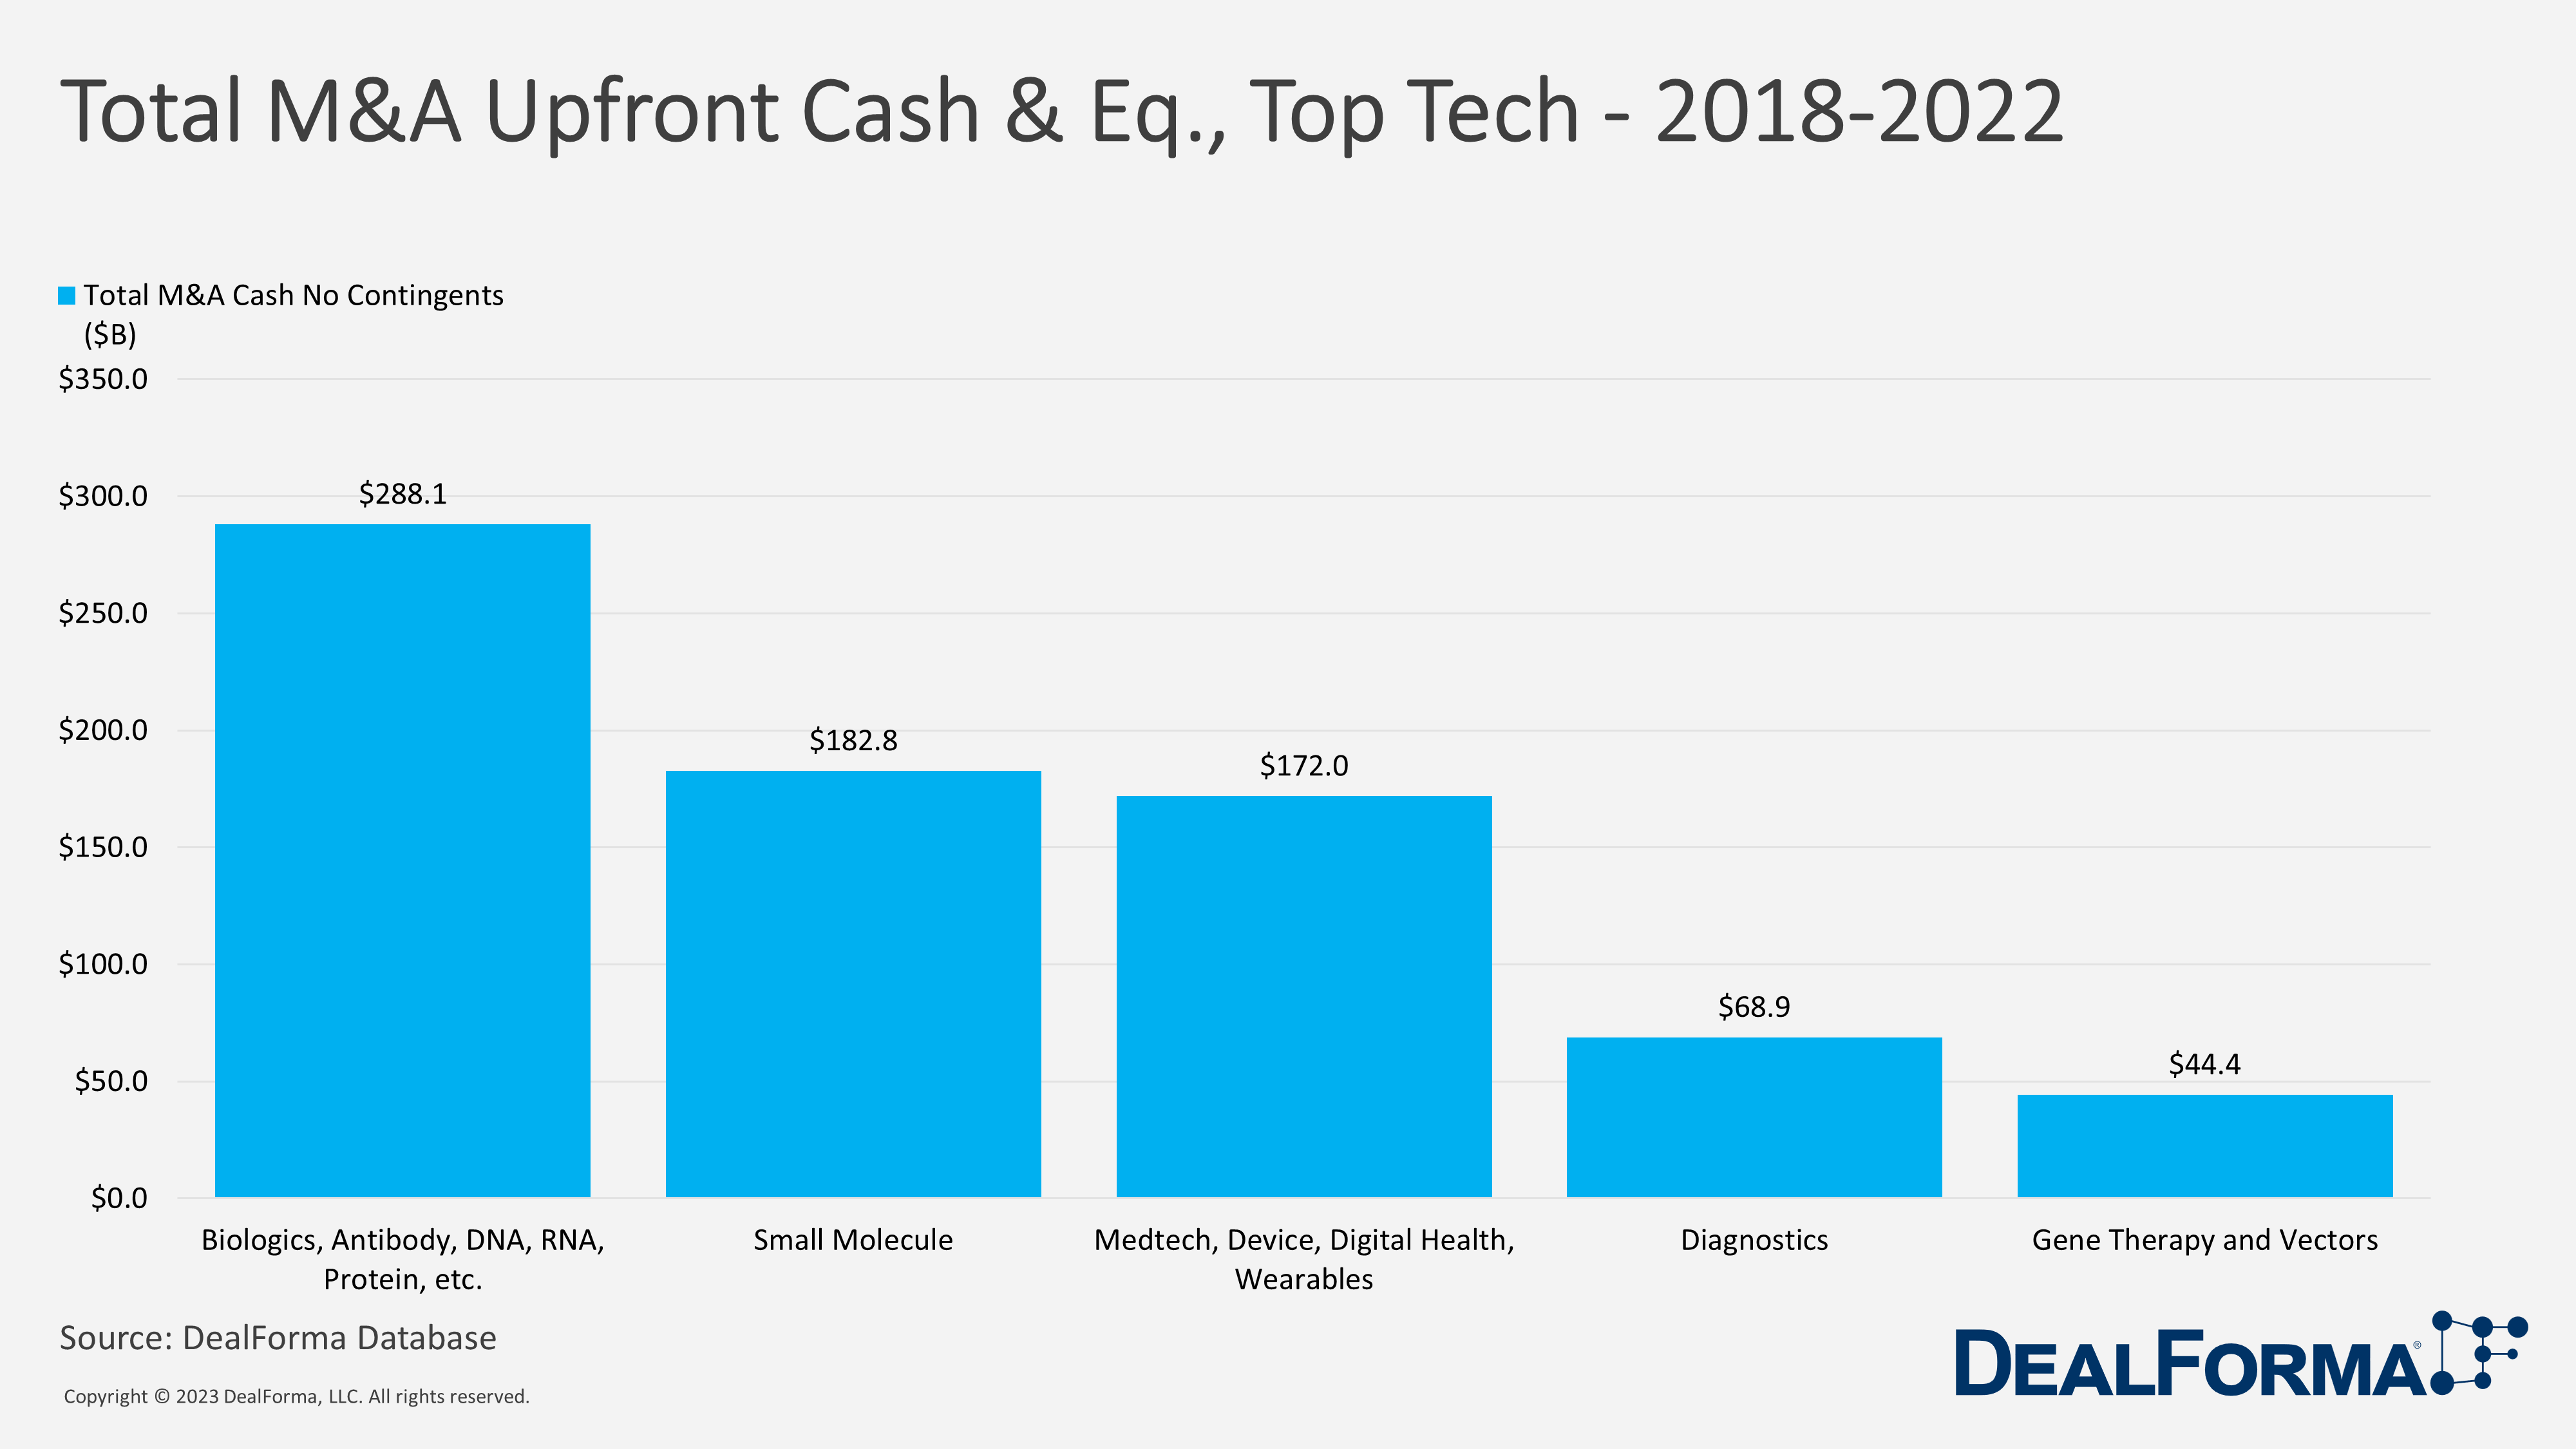 Total M&A Upfront Cash & Eq., Top Tech - 2018-2022